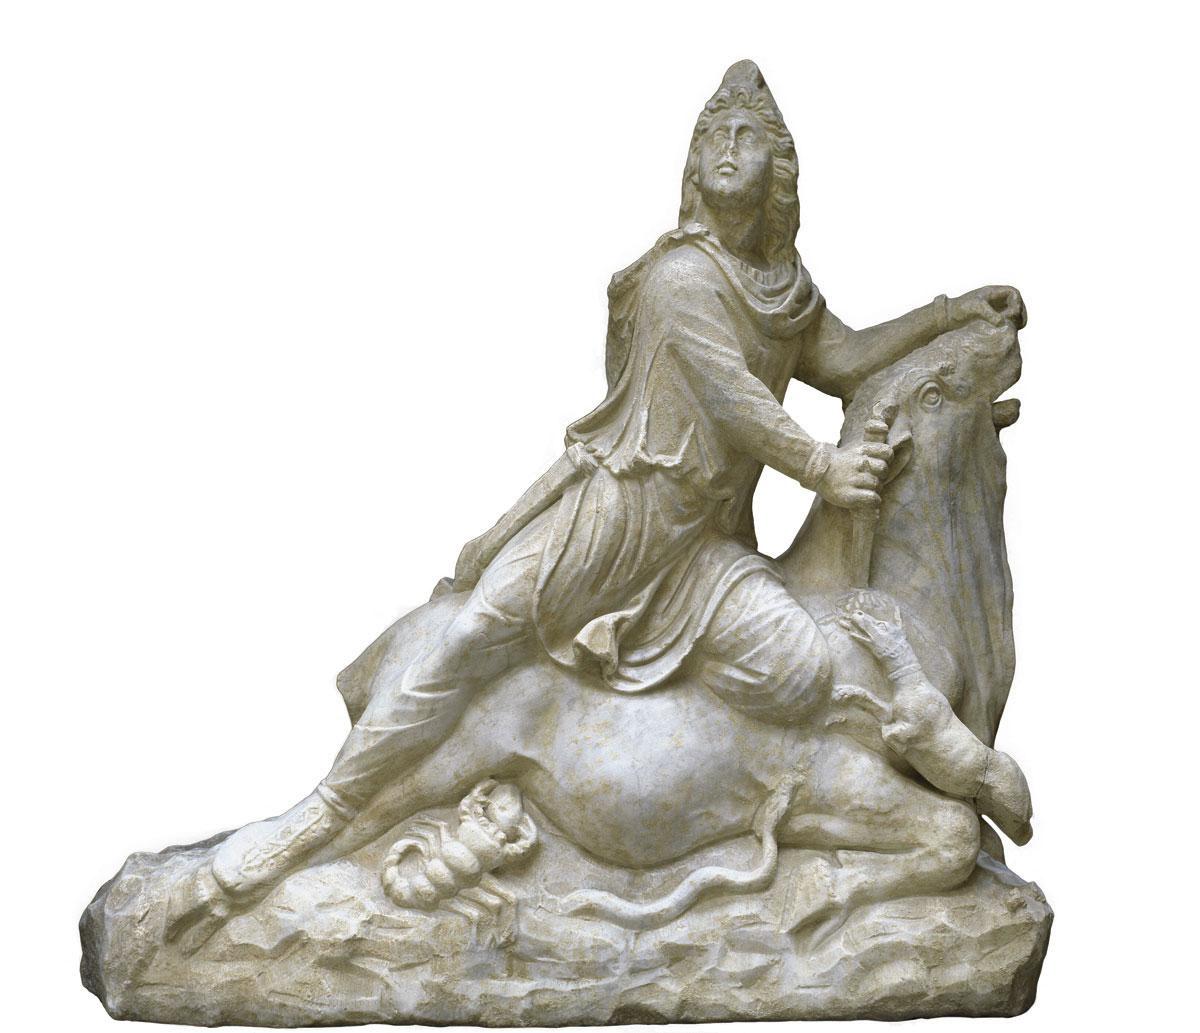 Le culte de Mithra s'est propagé dans tout l'Empire romain avant d'être éradiqué à la fin du IVe siècle.